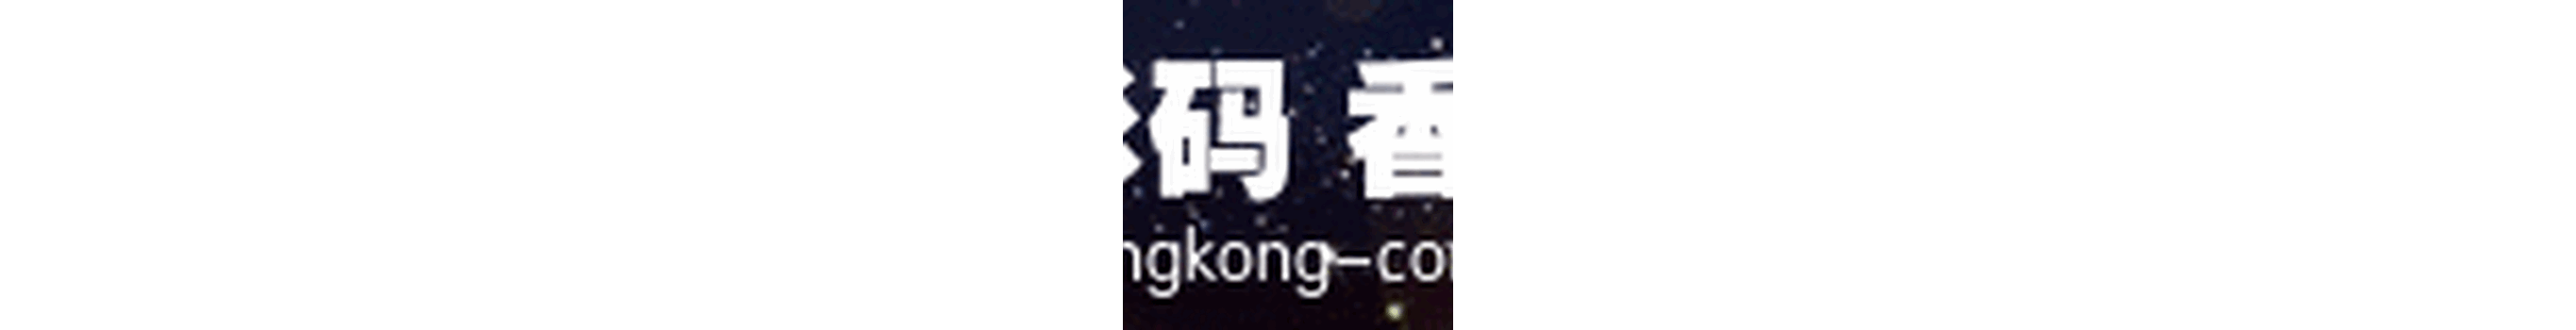 香港条形码中国备案优选登尼特